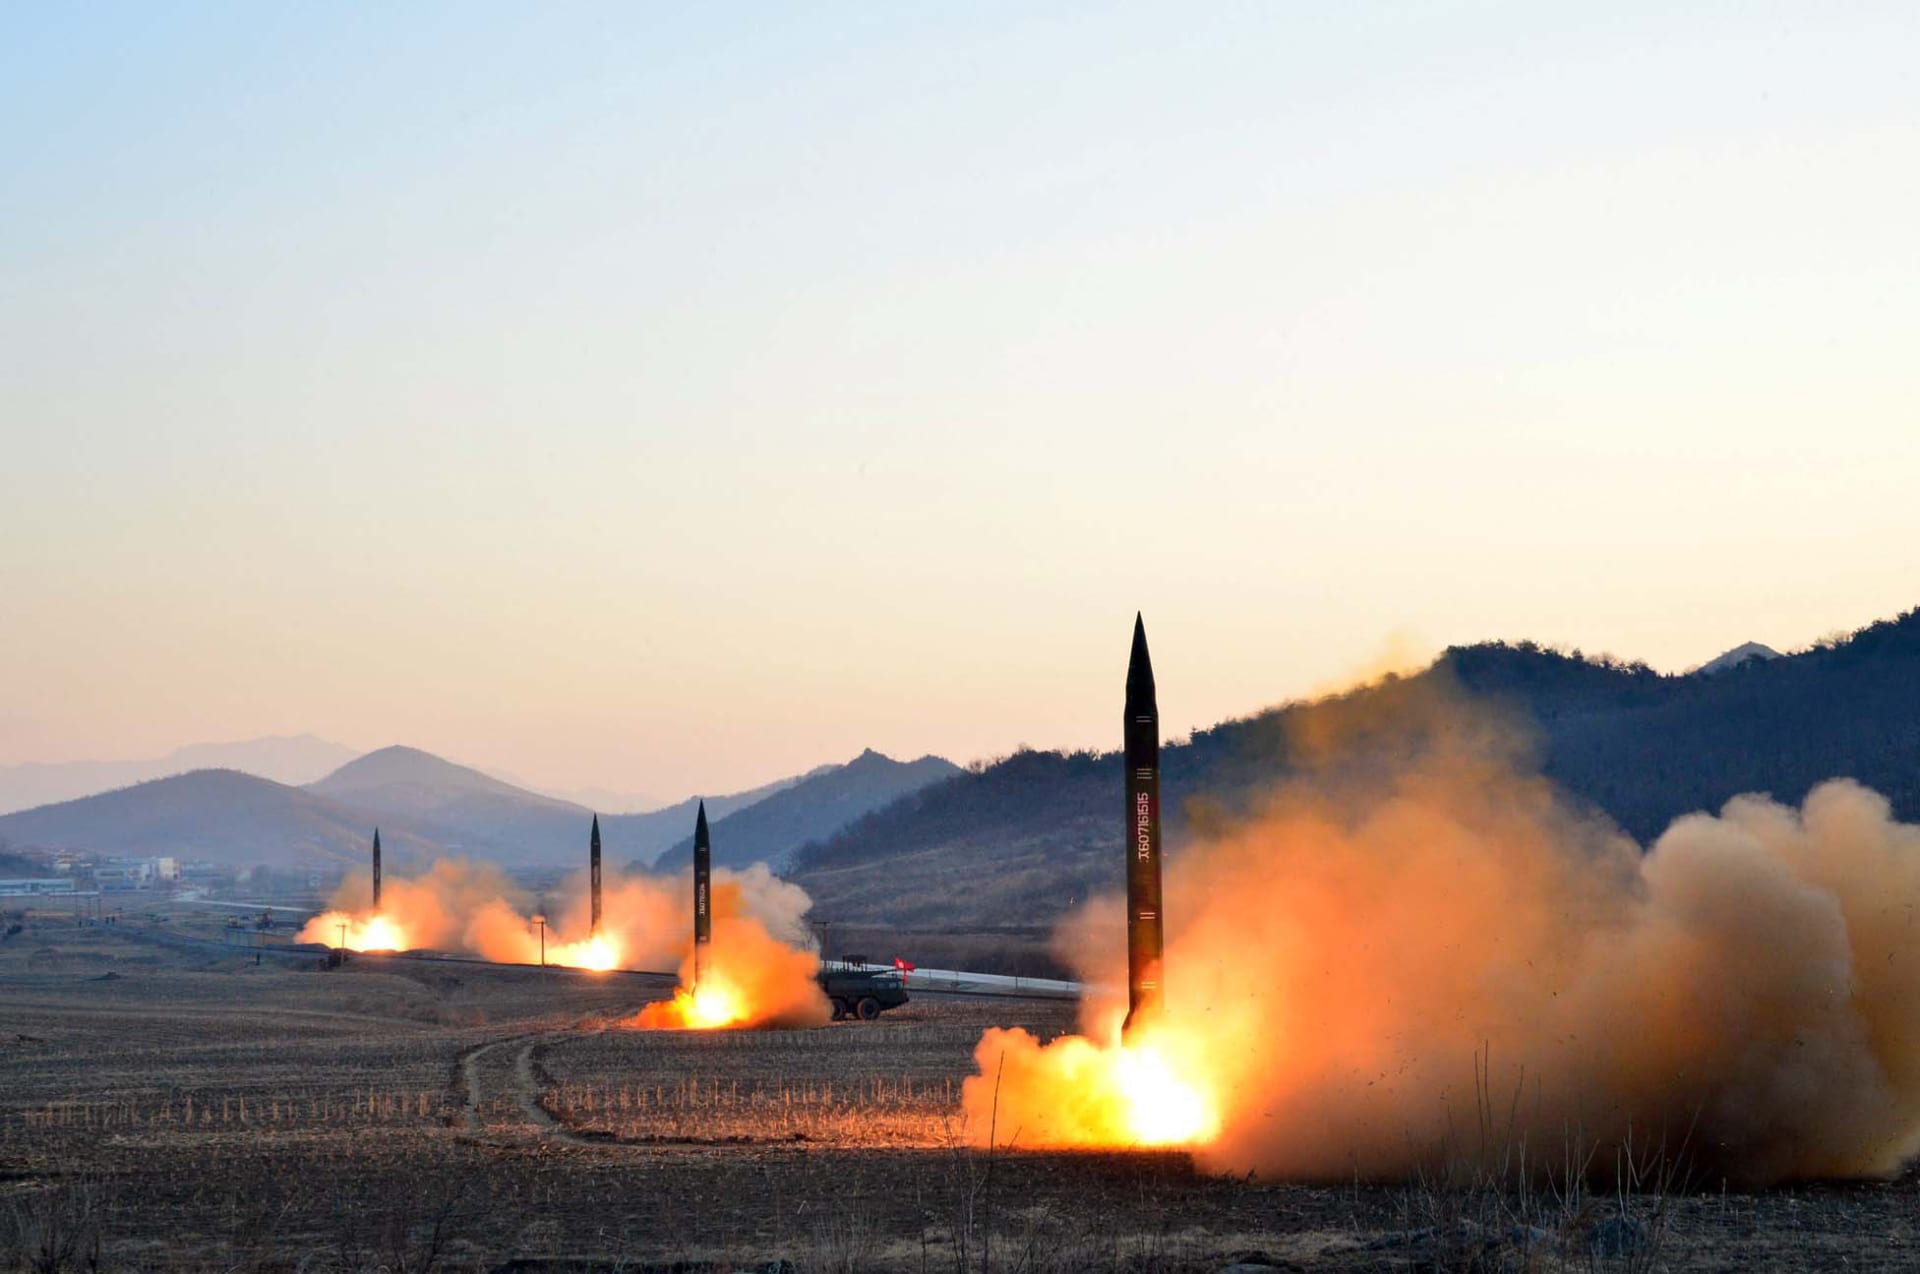 صورة إطلاق صاروخي غير مؤرخة نشرتها وكالة الأنباء المركزية الكورية الشمالية في 7 مارس 2017